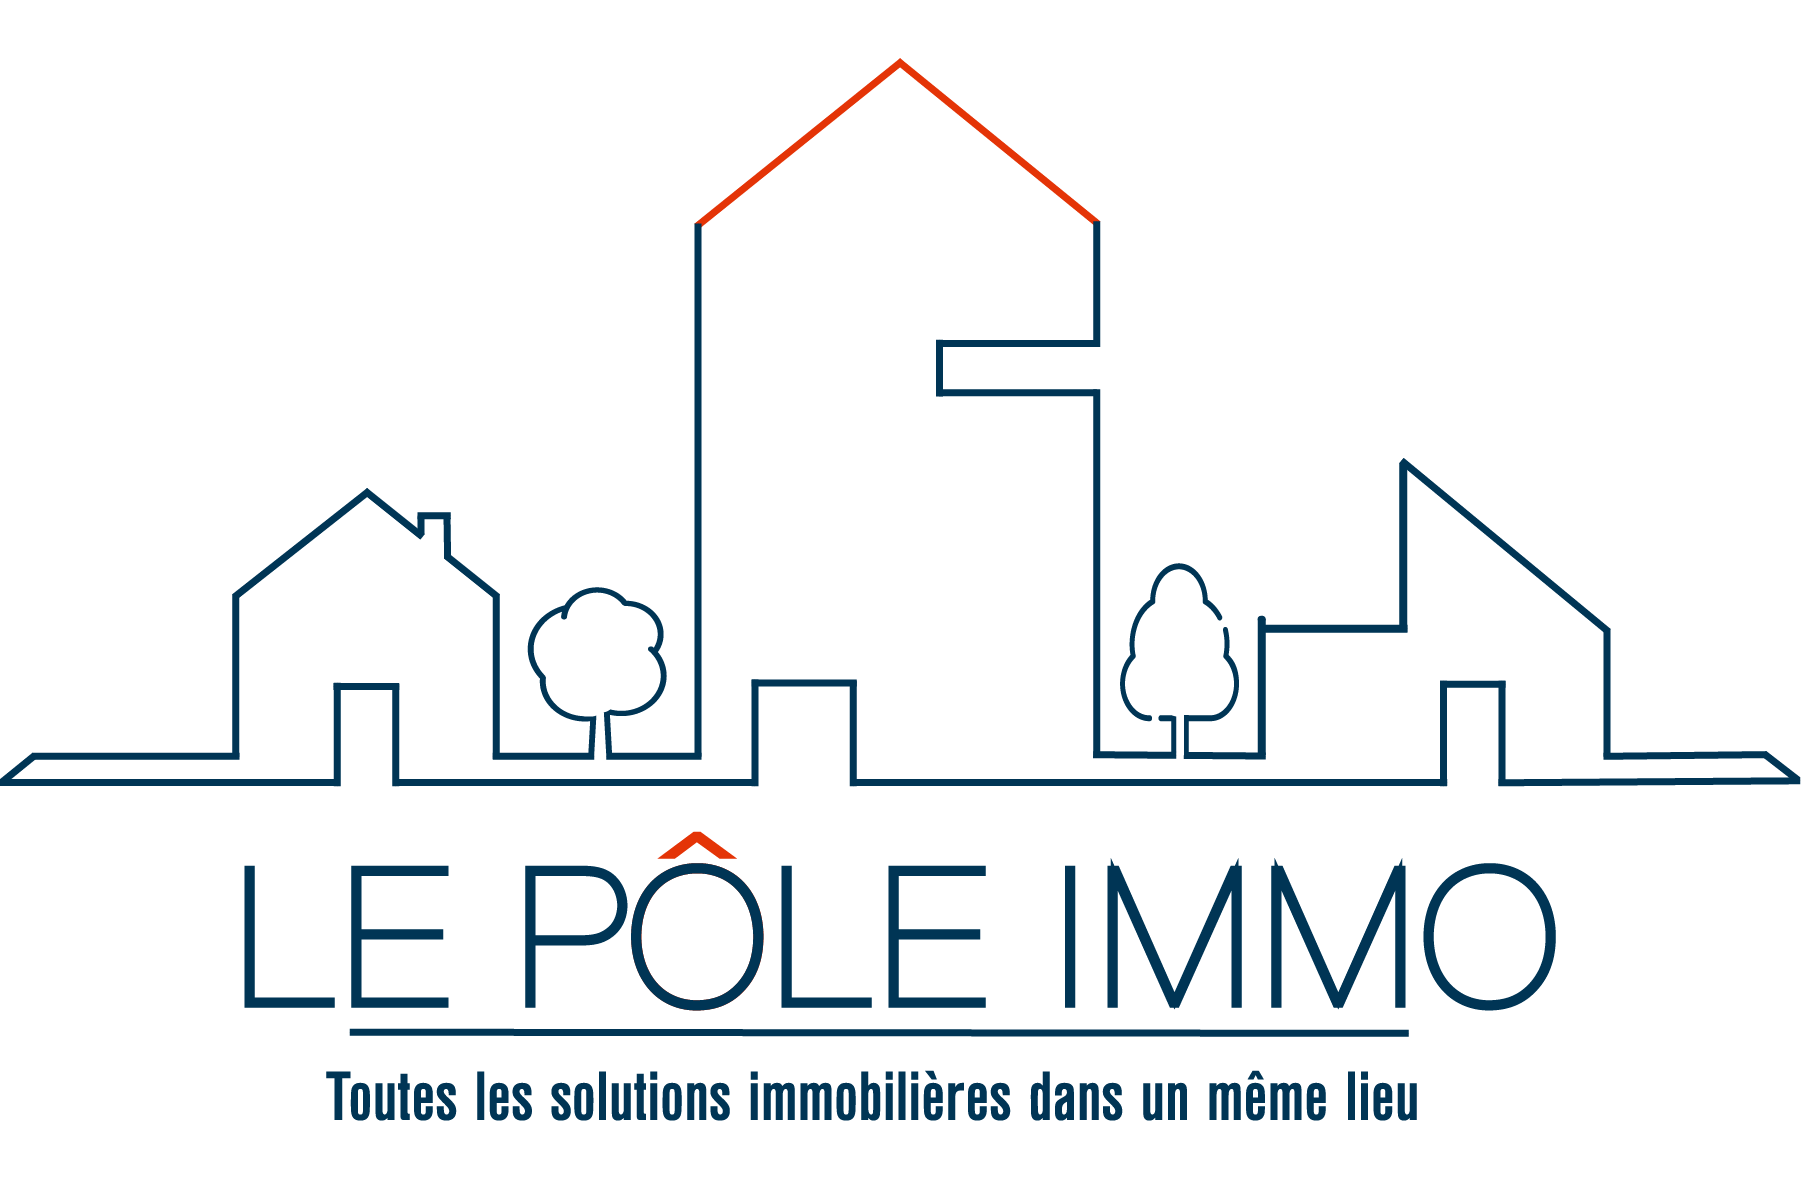 Le pôle IMMO Logo